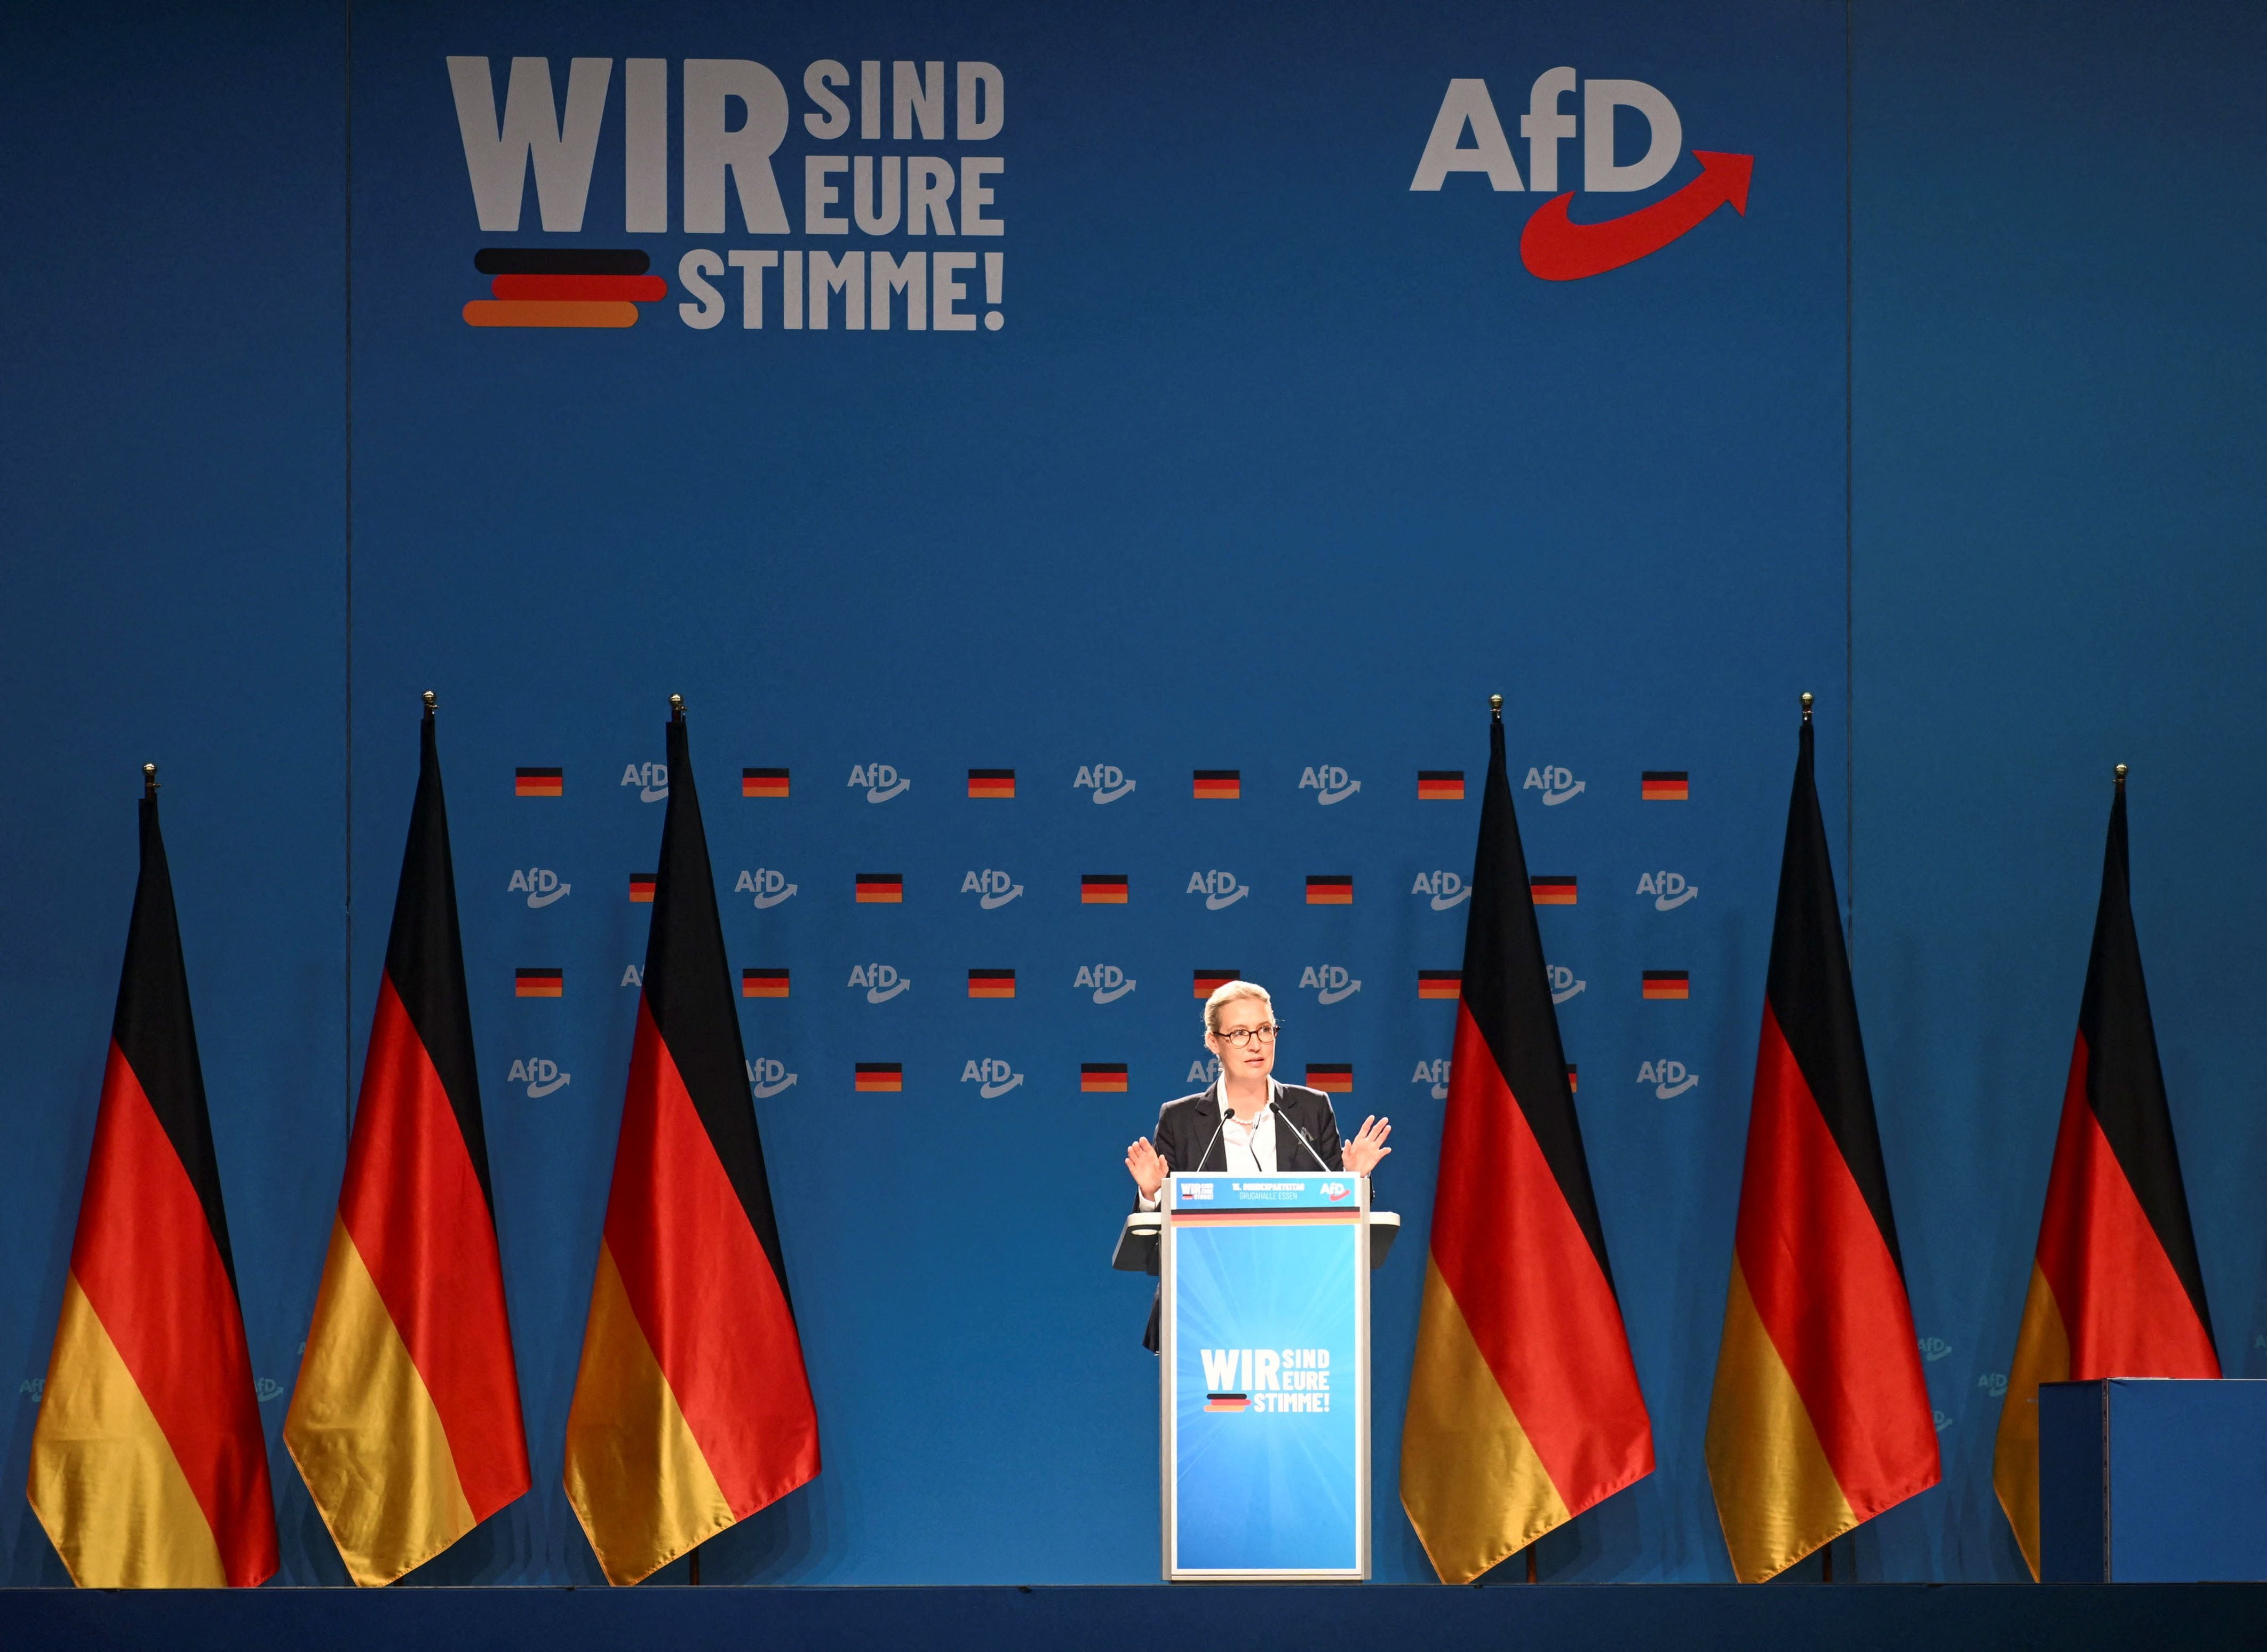 Los ultras alemanes de AfD confían en quebrar el cordón sanitario que los aleja de los gobiernos